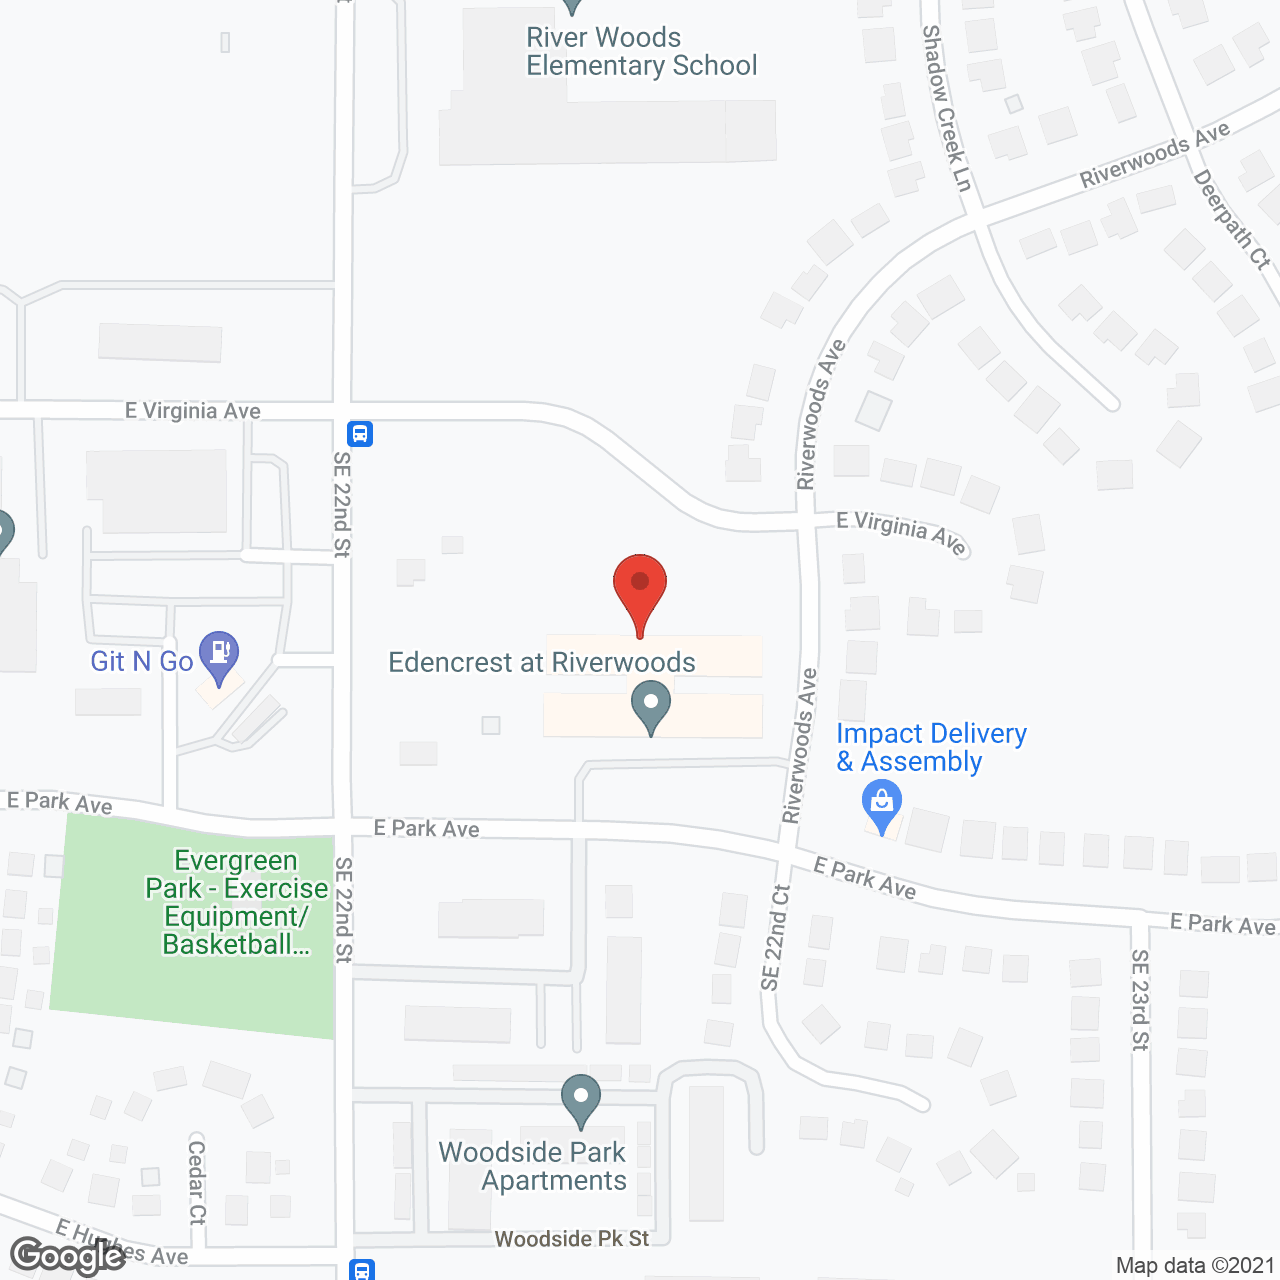 Edencrest at Riverwoods in google map